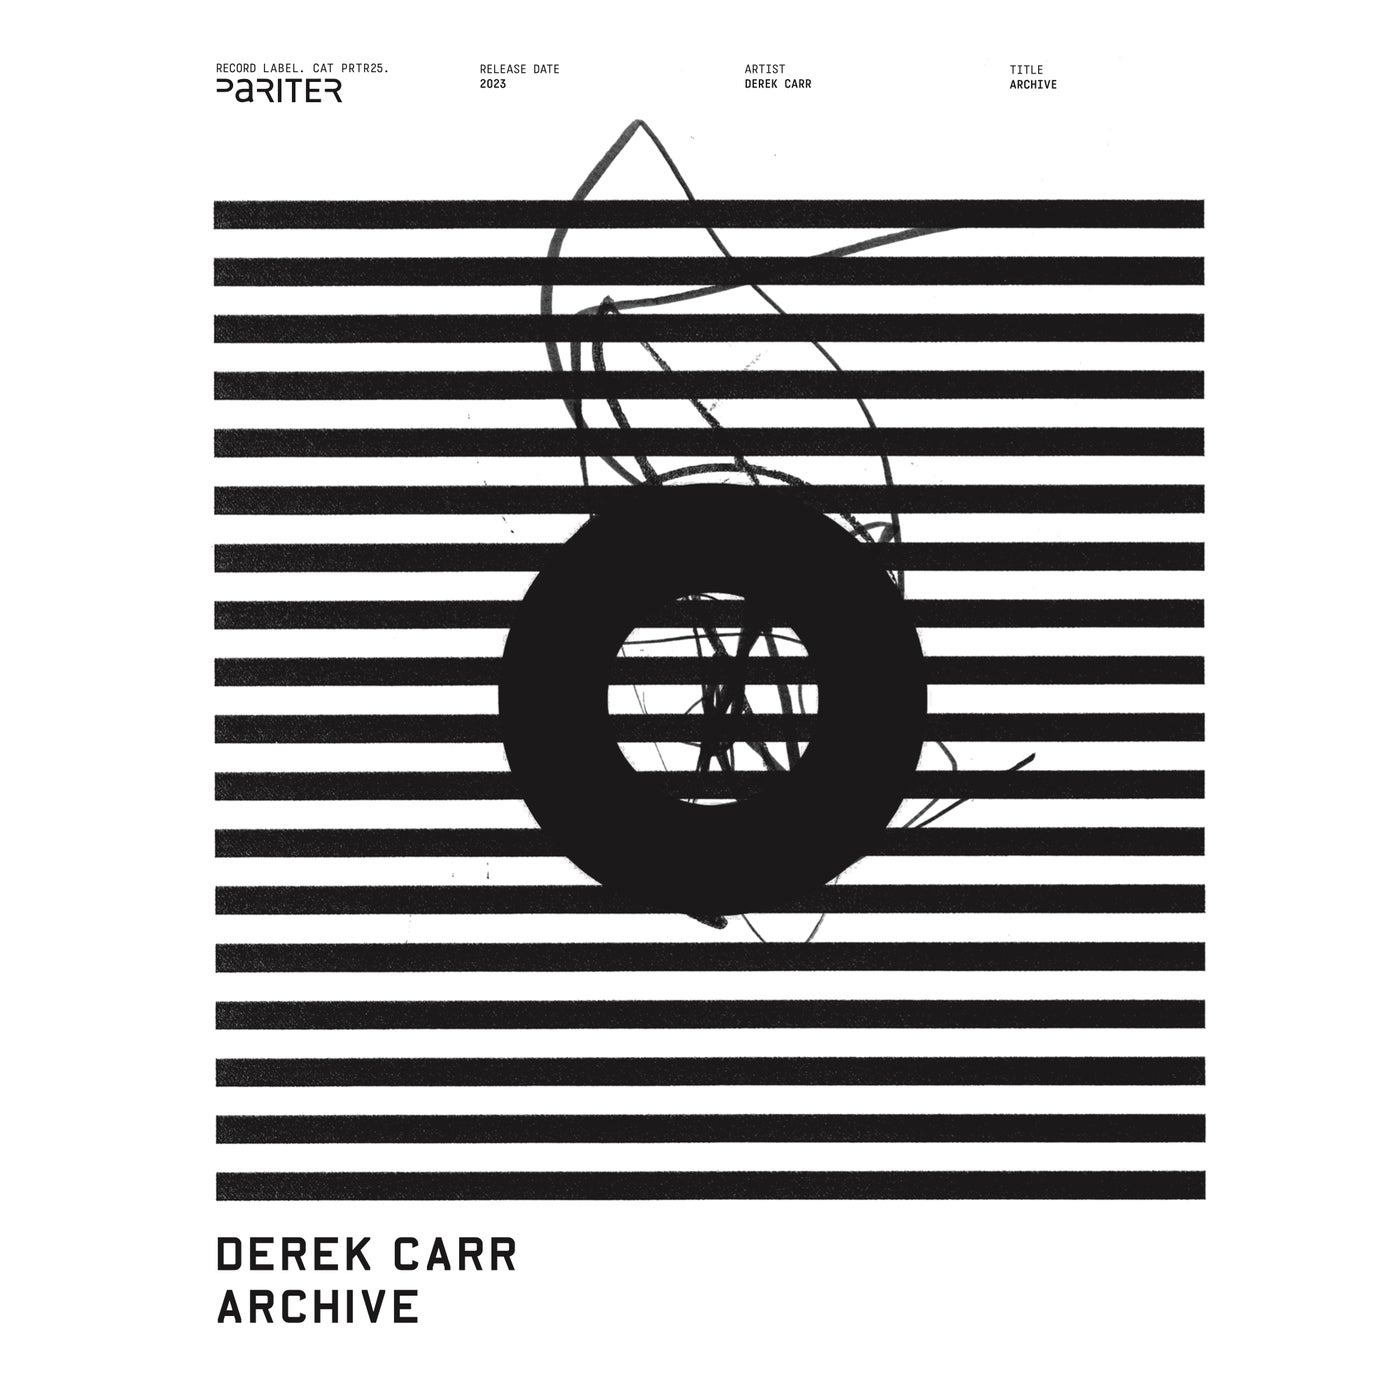 Derek Carr - Archive